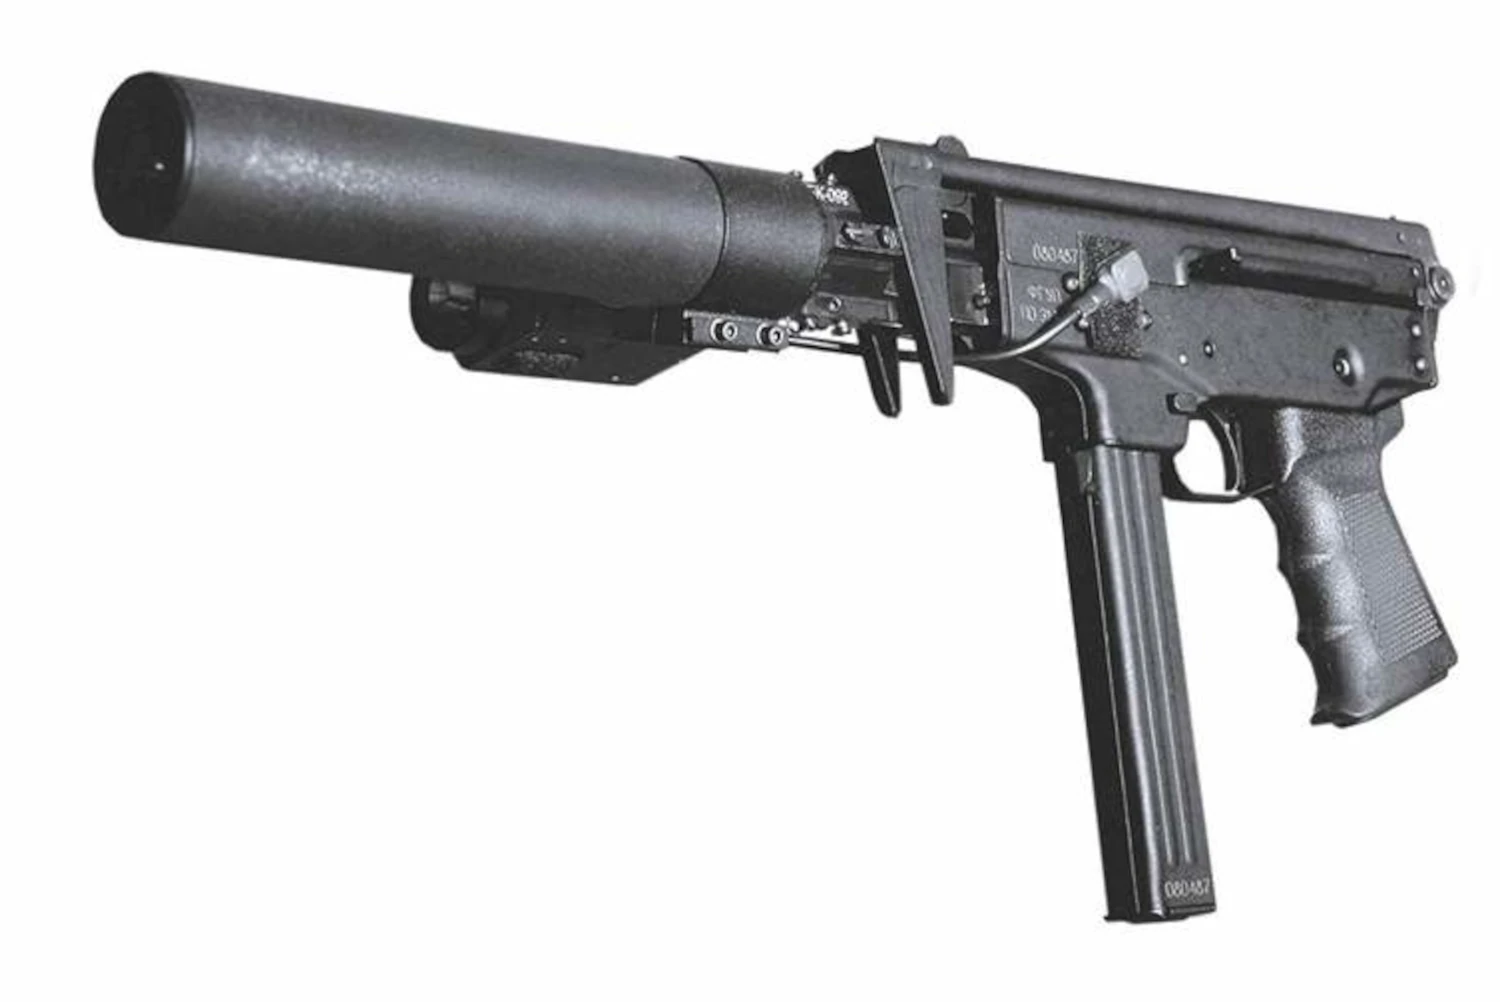 russian submachine guns